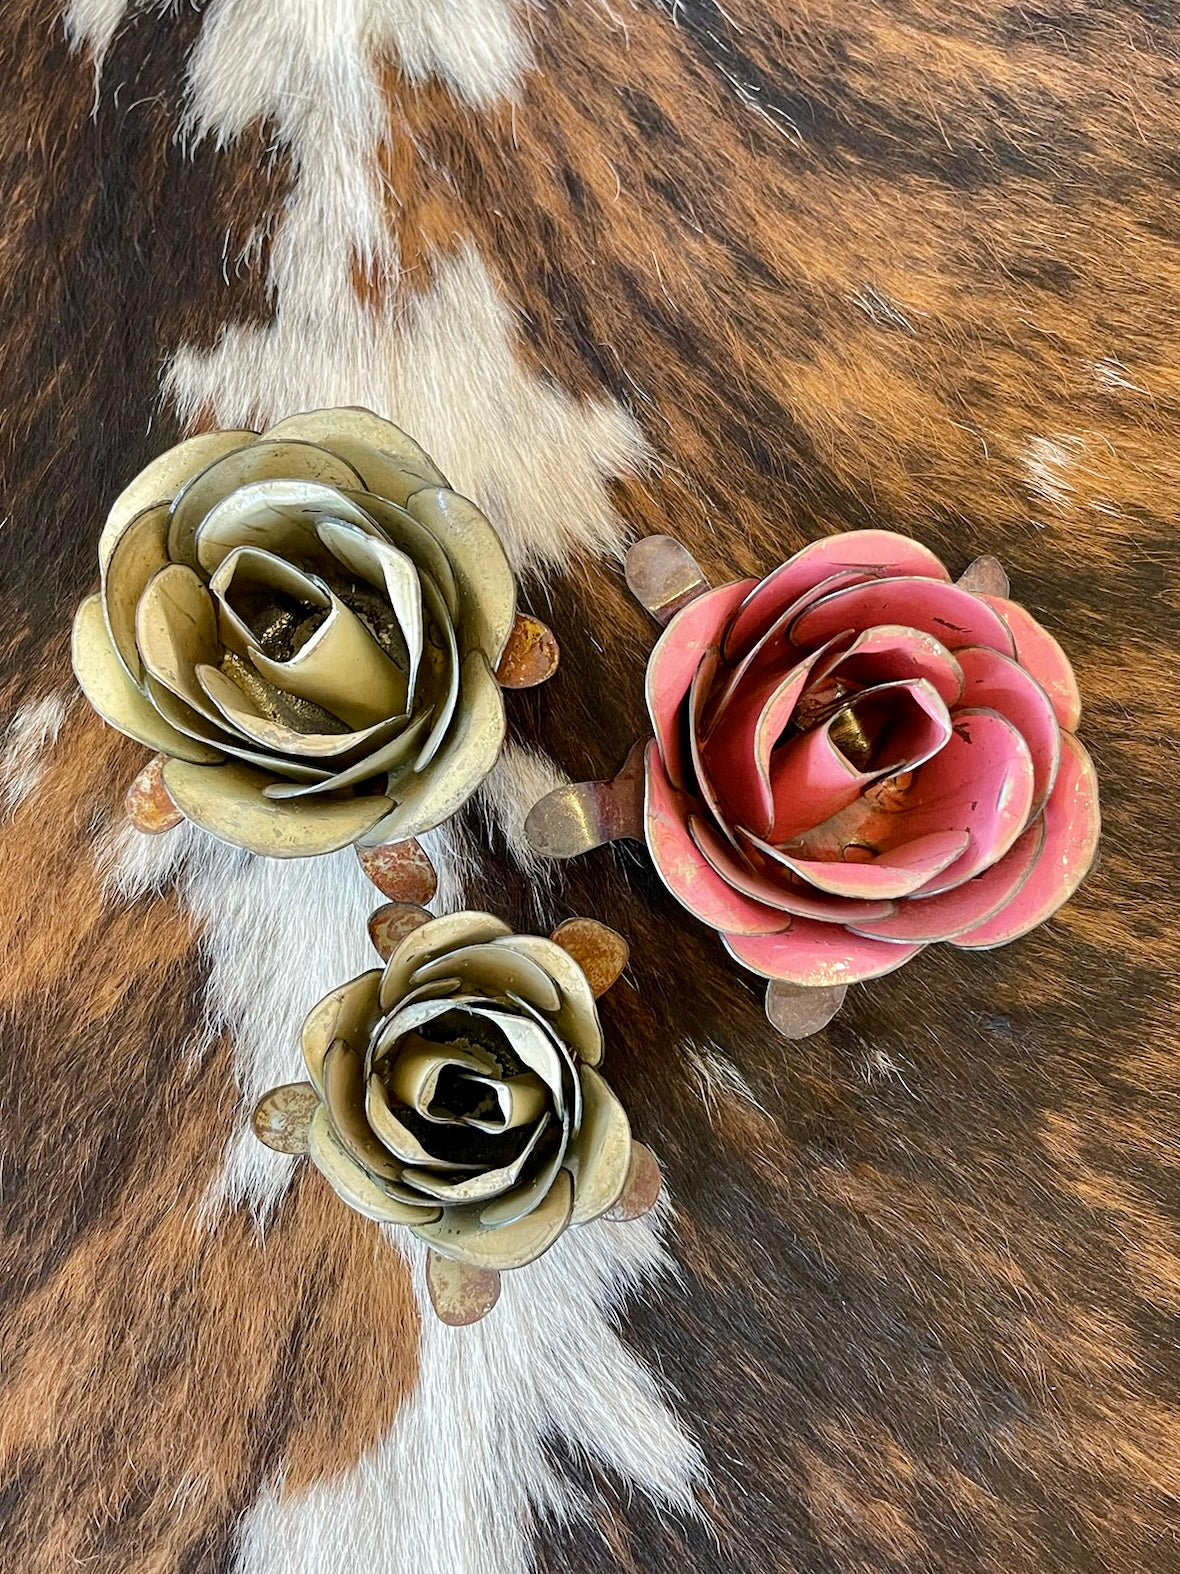 Decorative Rustic Metal Roses